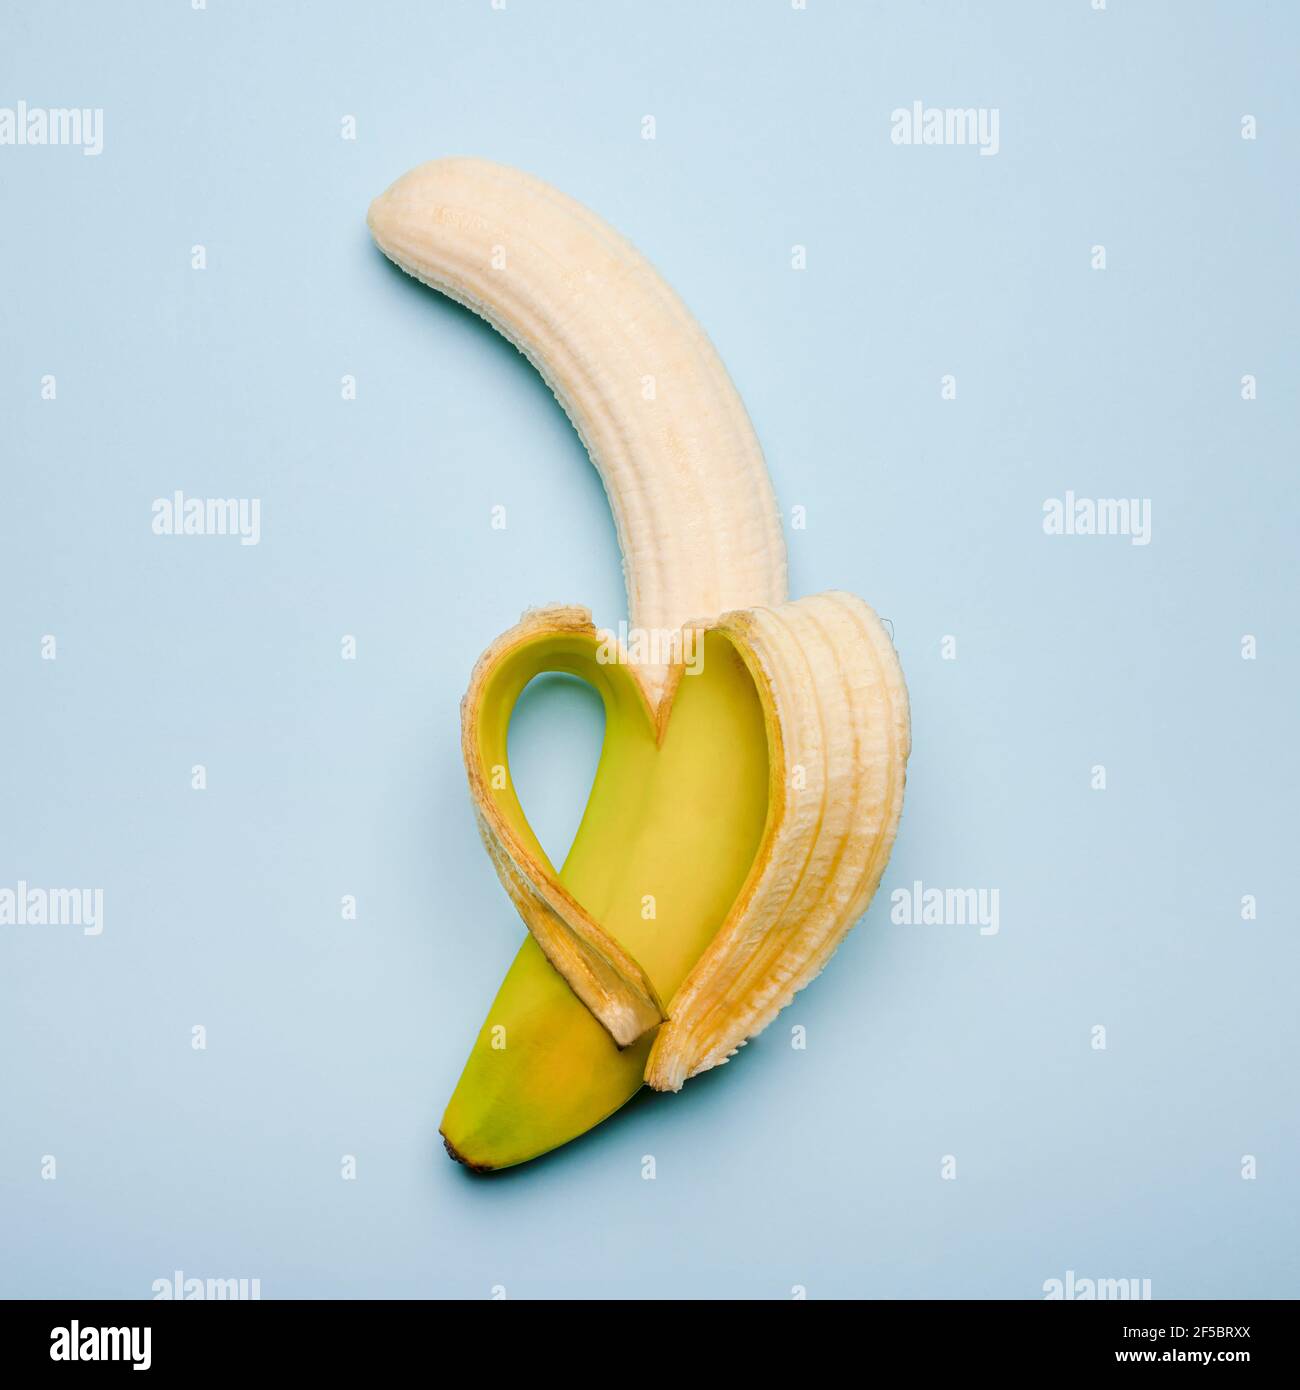 a heart-shaped banana made from the peel Stock Photo